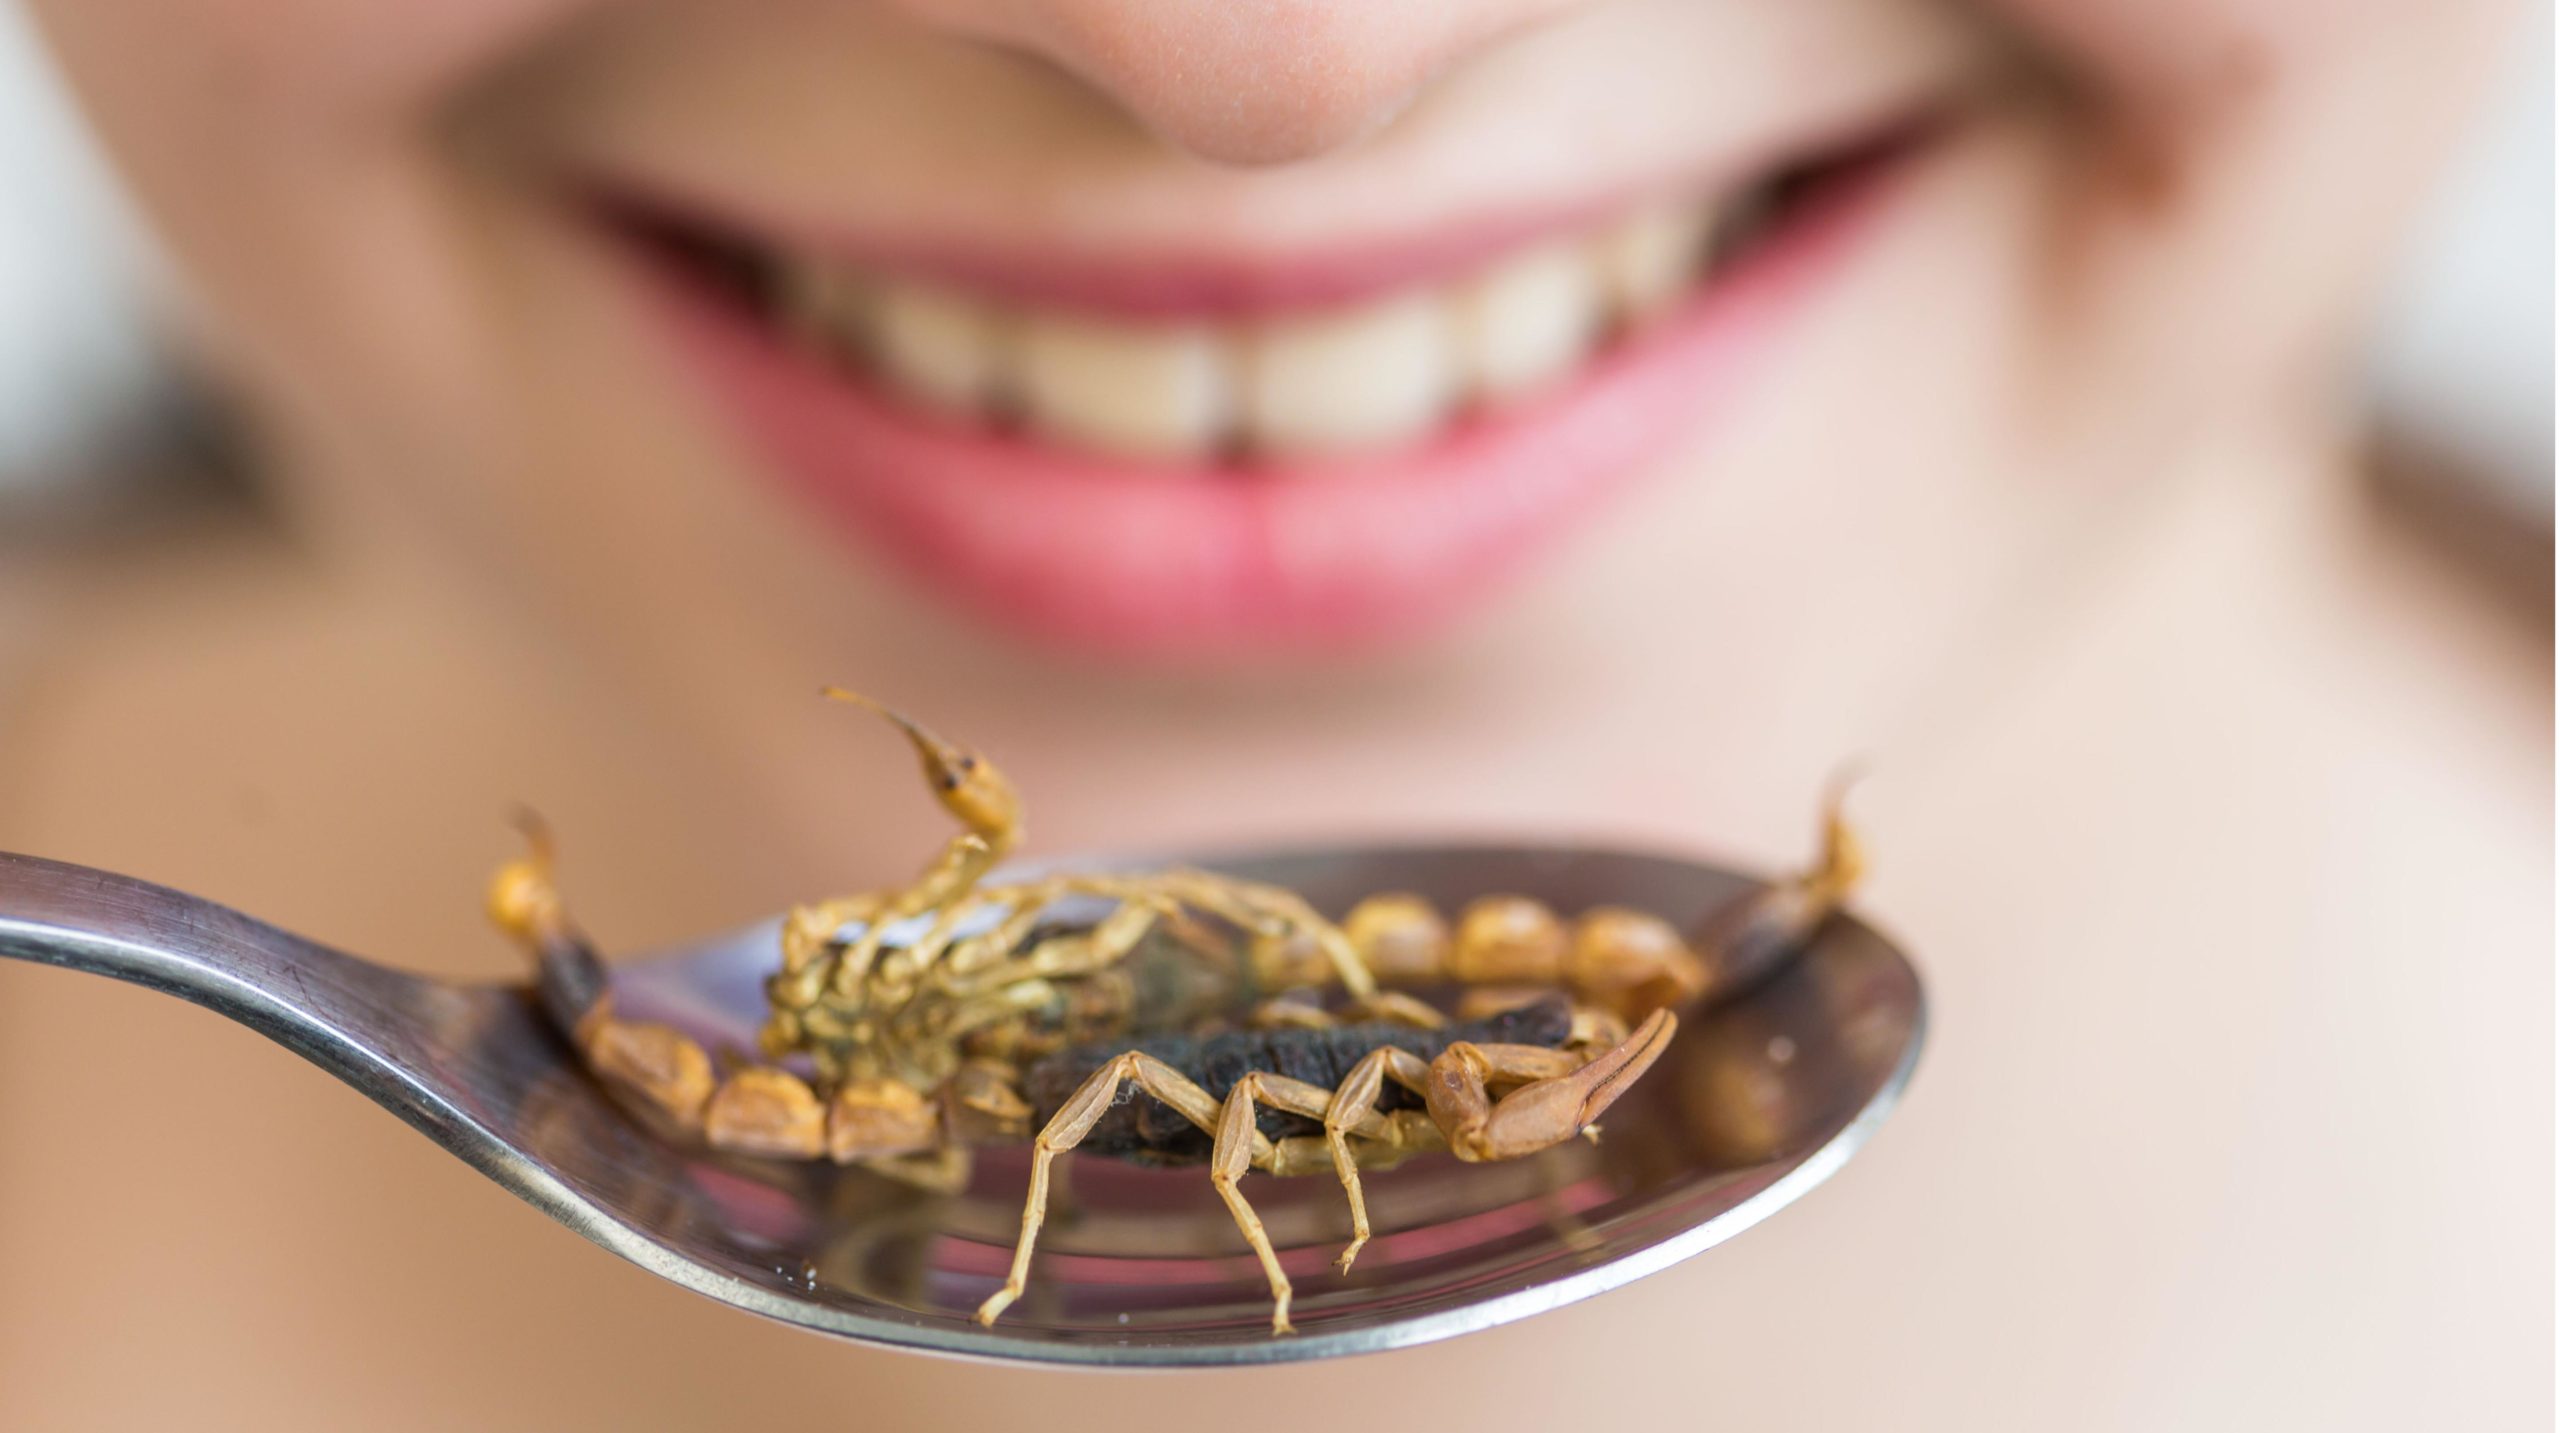 Mangera-t-on bientôt des insectes  chez nous?